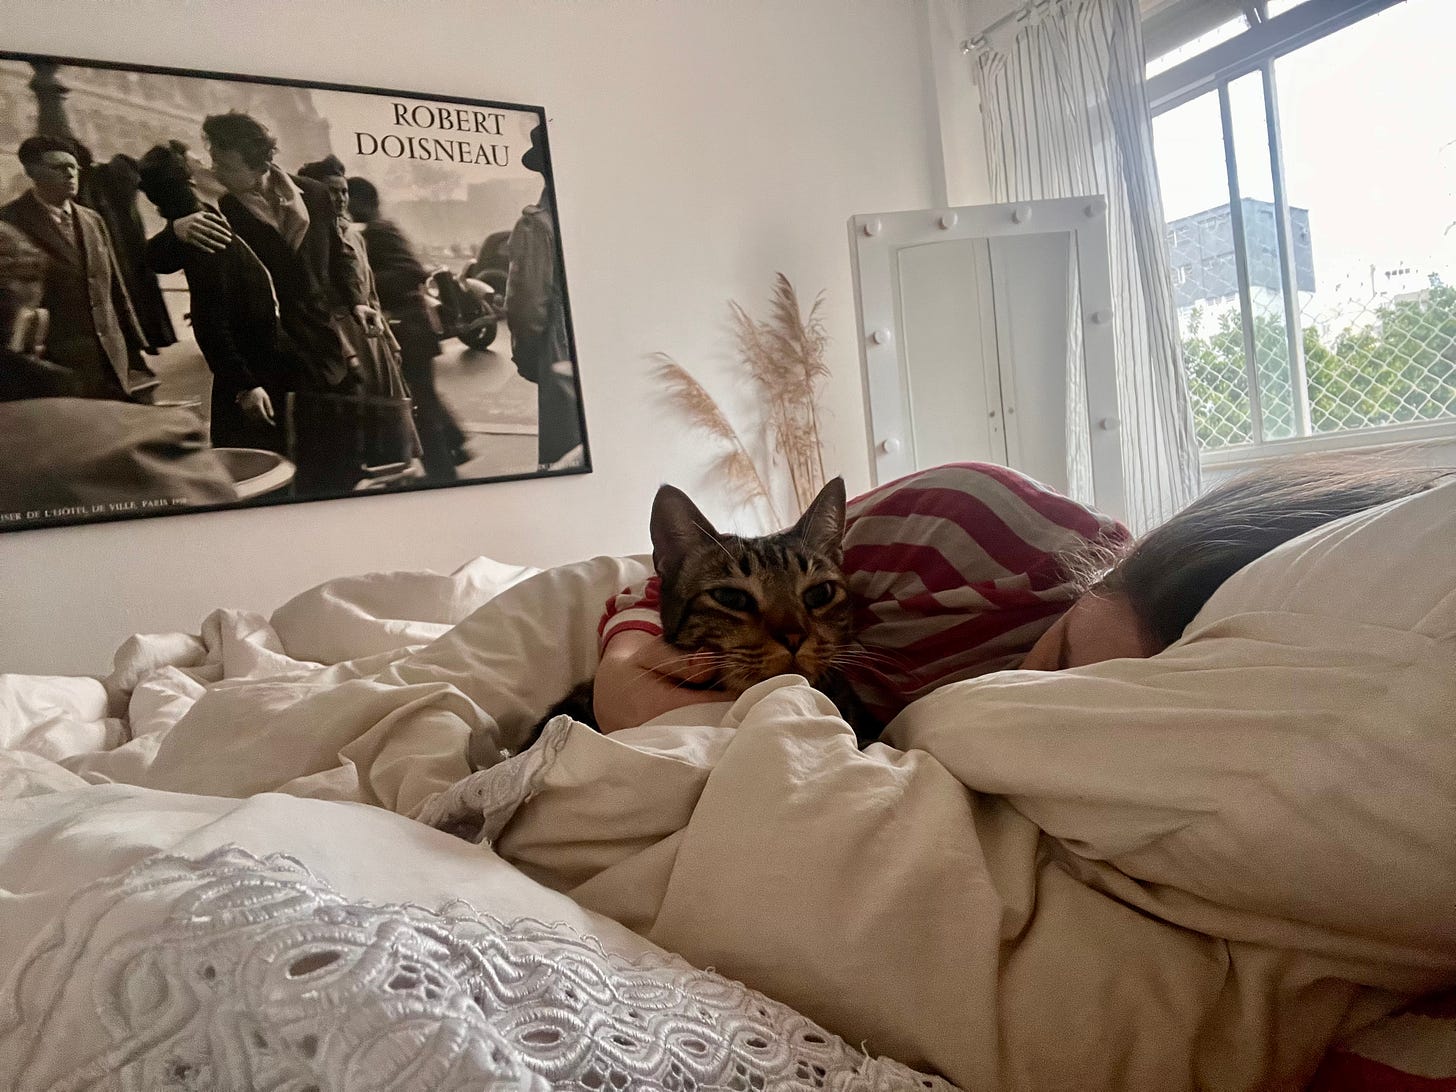 Eu deitada na cama toda branca abraçada ao gato Fortunato. Ao fundo, na parede, uma fotografia emoldurada enorme de Robert Doisnau na parede